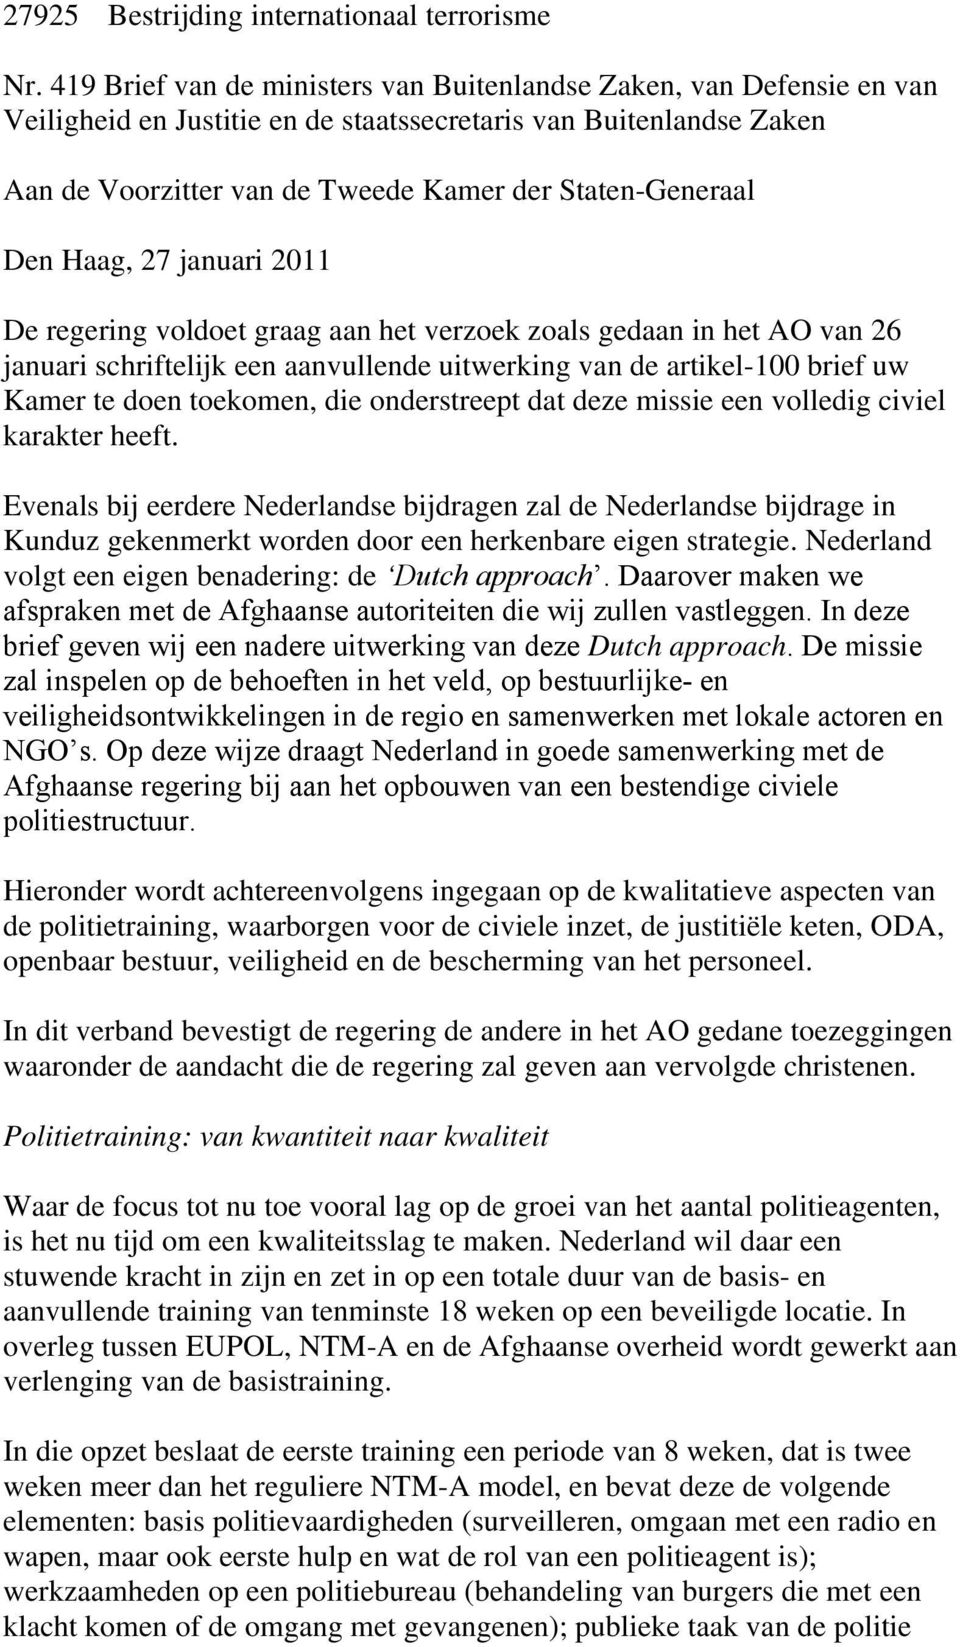 Den Haag, 27 januari 2011 De regering voldoet graag aan het verzoek zoals gedaan in het AO van 26 januari schriftelijk een aanvullende uitwerking van de artikel-100 brief uw Kamer te doen toekomen,